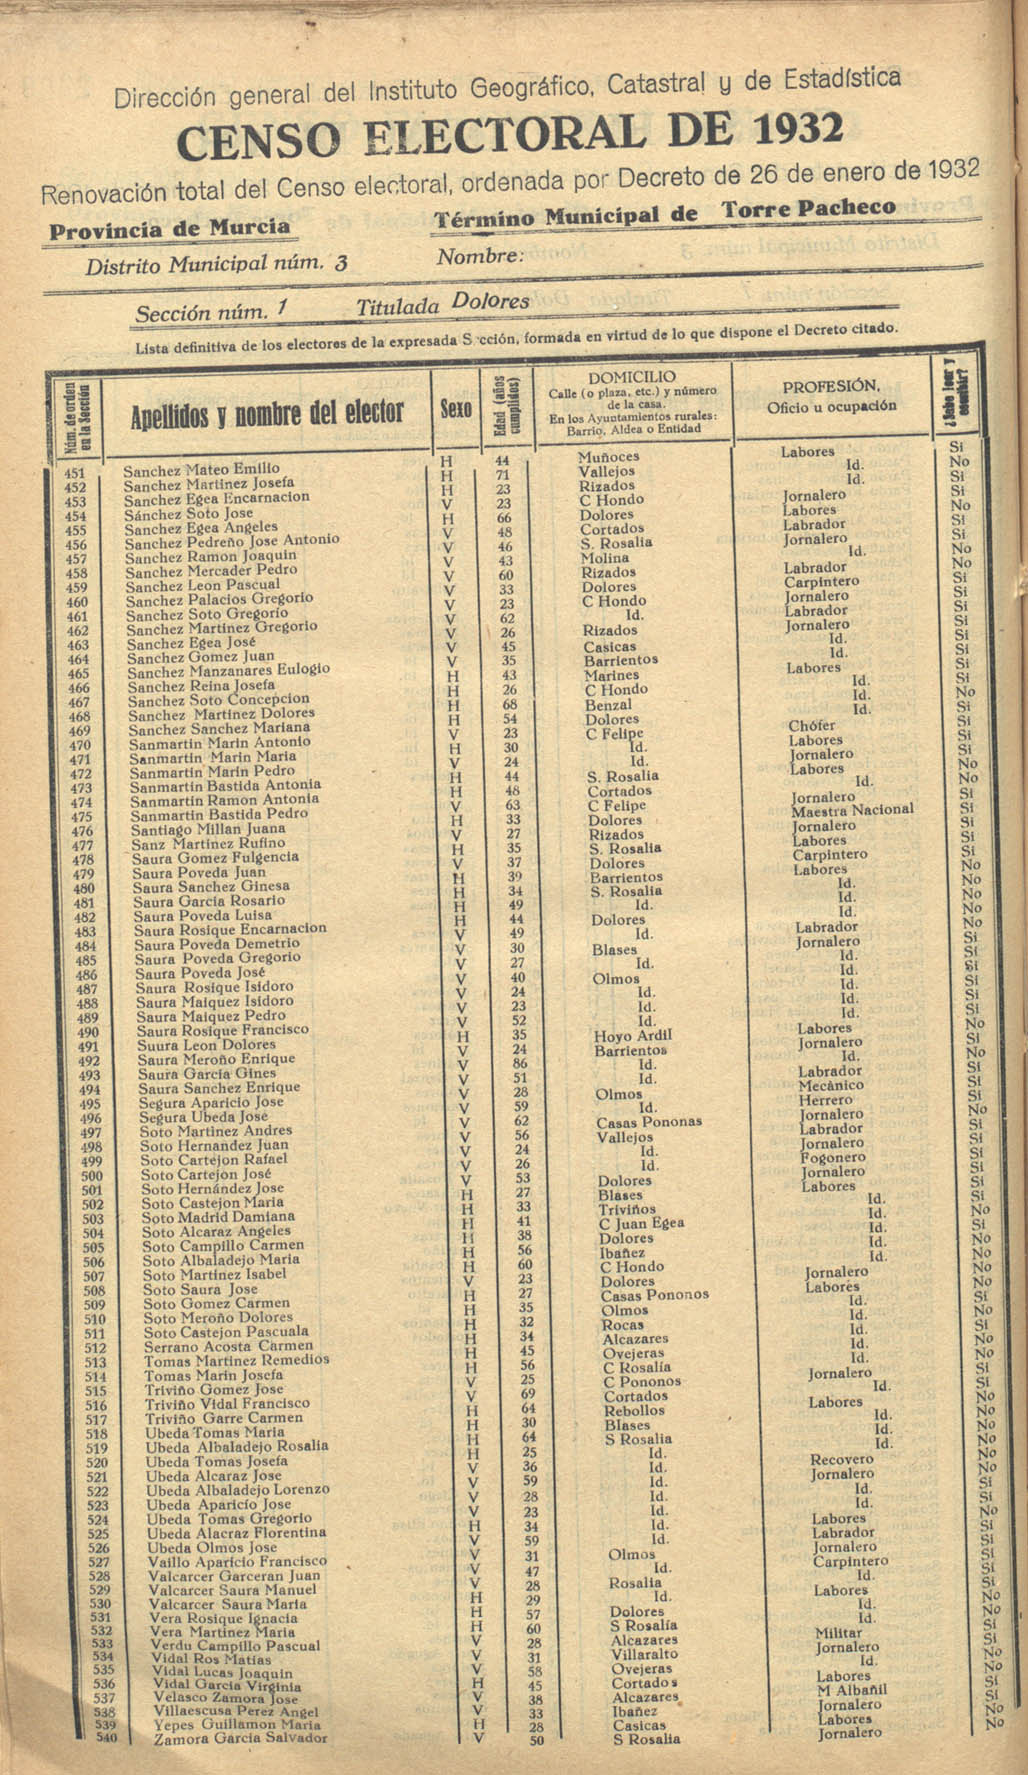 Censo electoral provincial de 1932. Listas definitivas de Torre Pacheco, formadas en virtud del Decreto de 26 de enero de 1932.